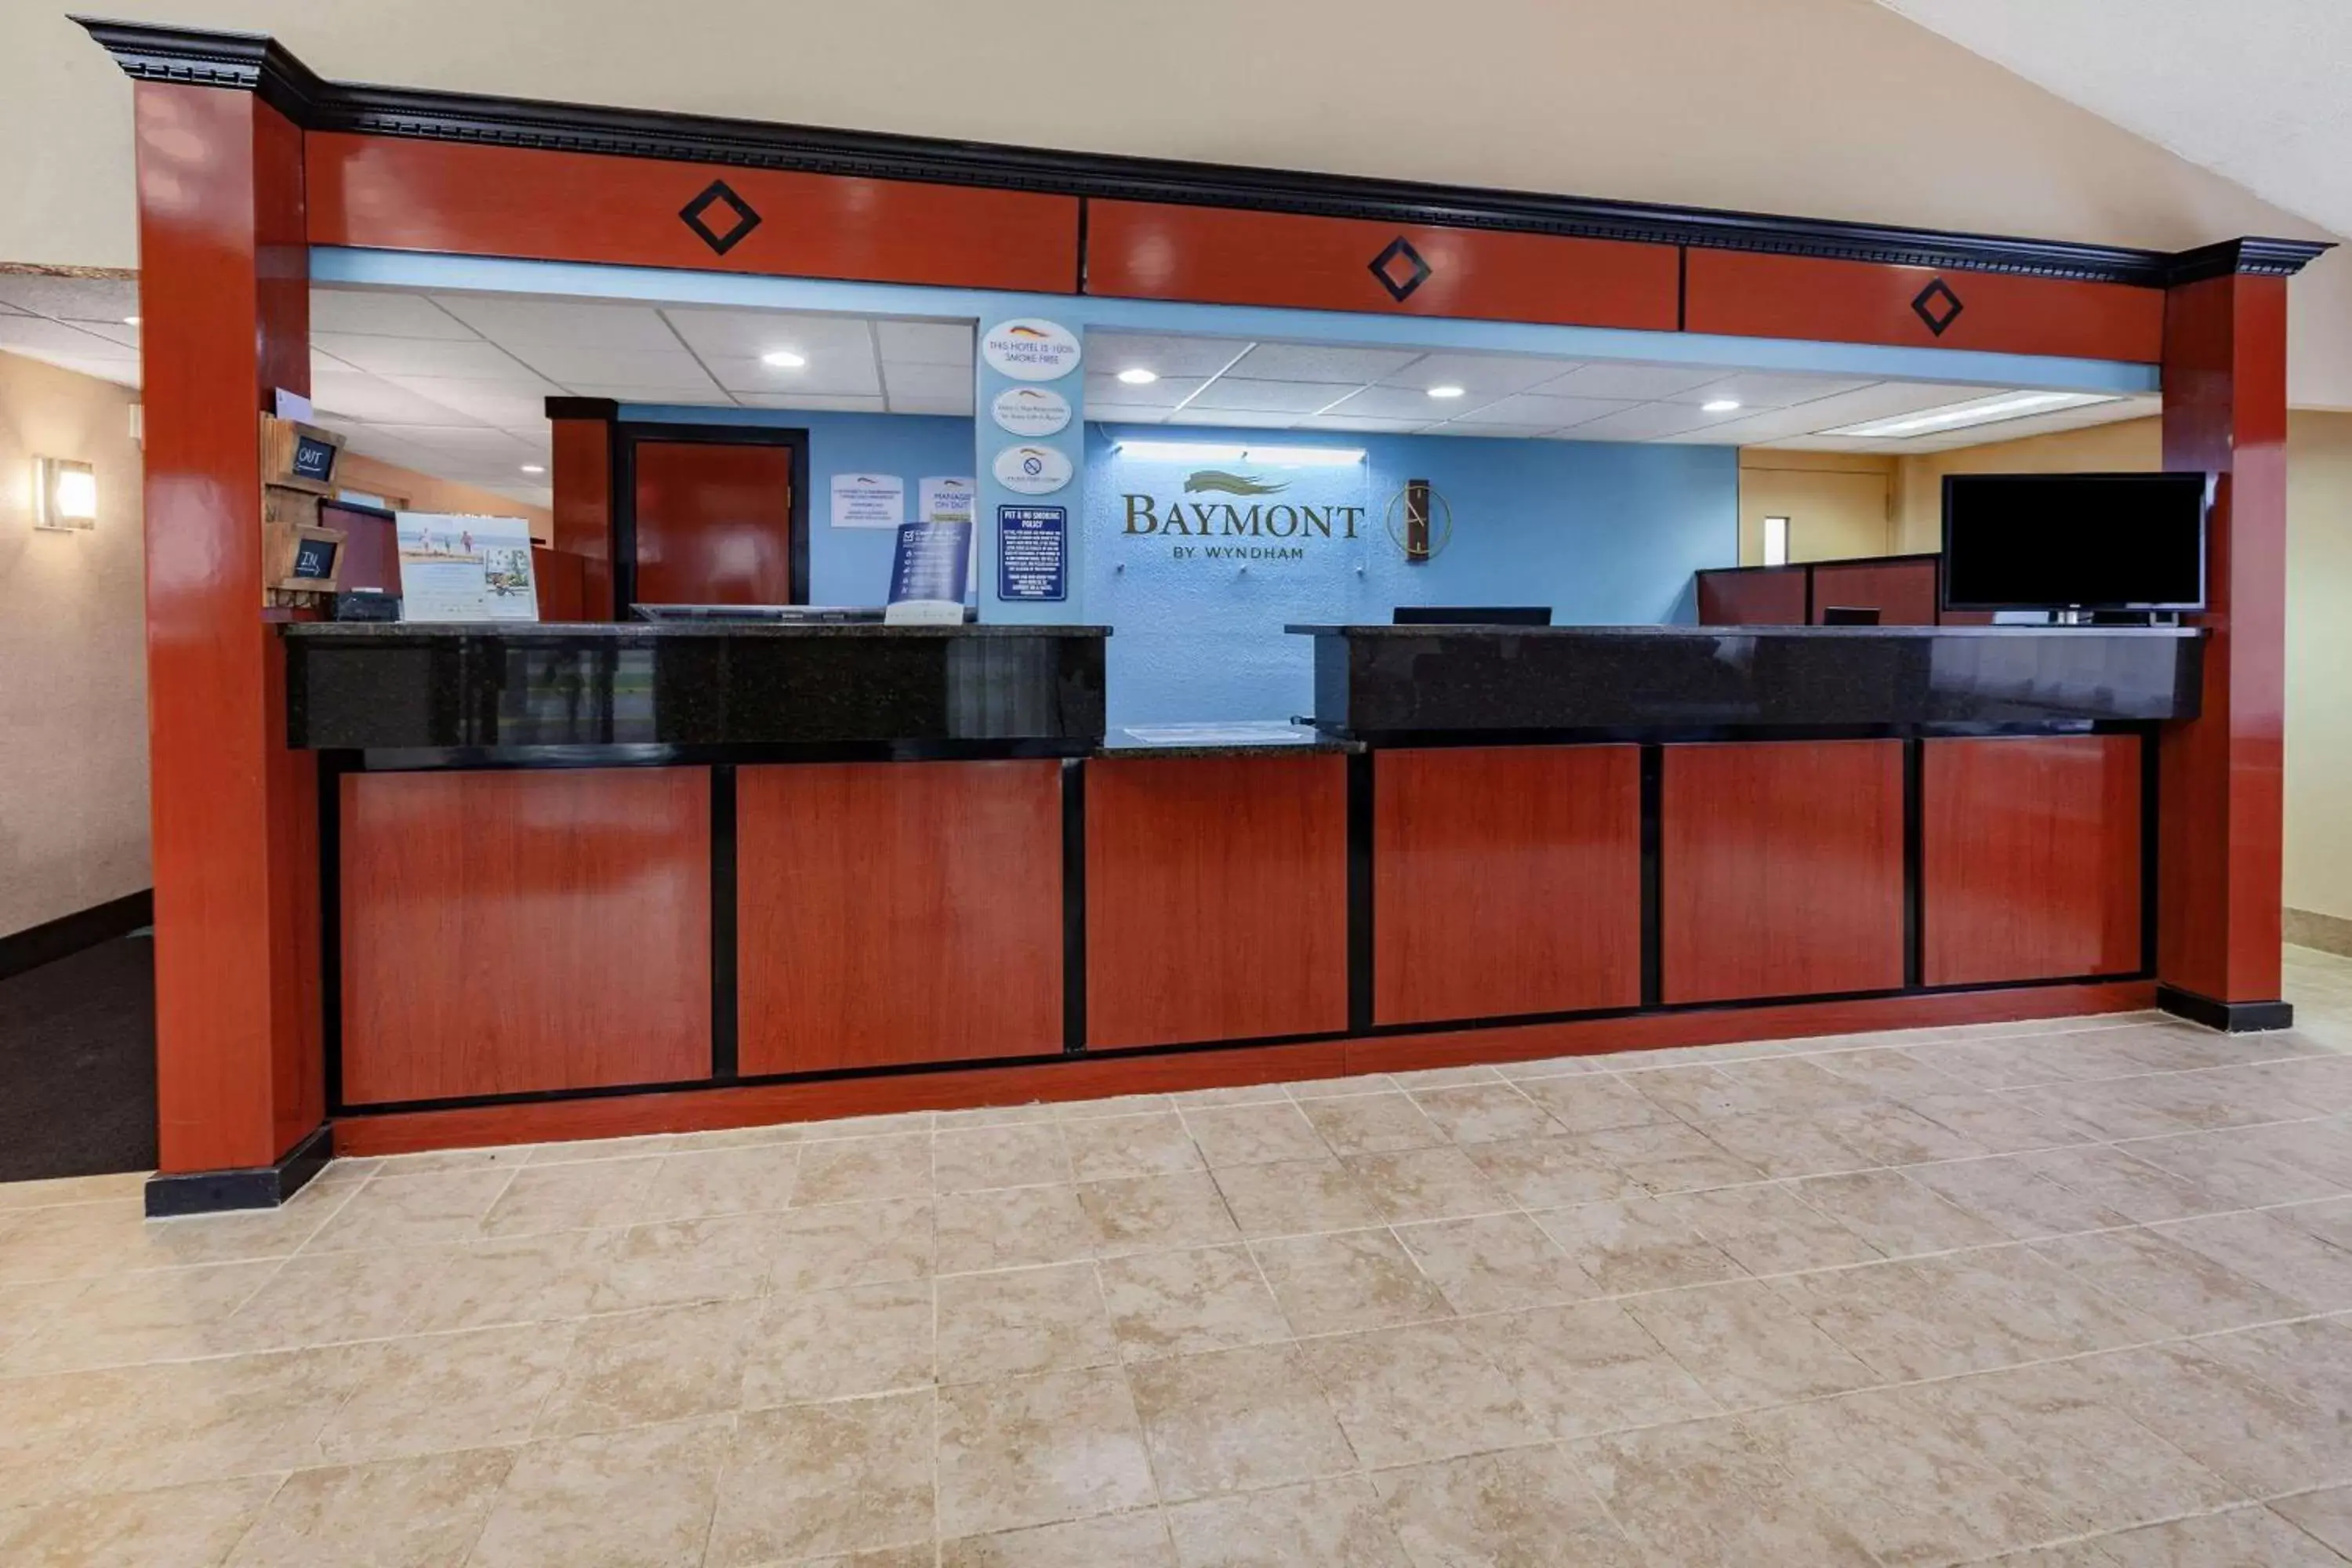 Lobby or reception, Lobby/Reception in Baymont by Wyndham Perrysburg-Toledo